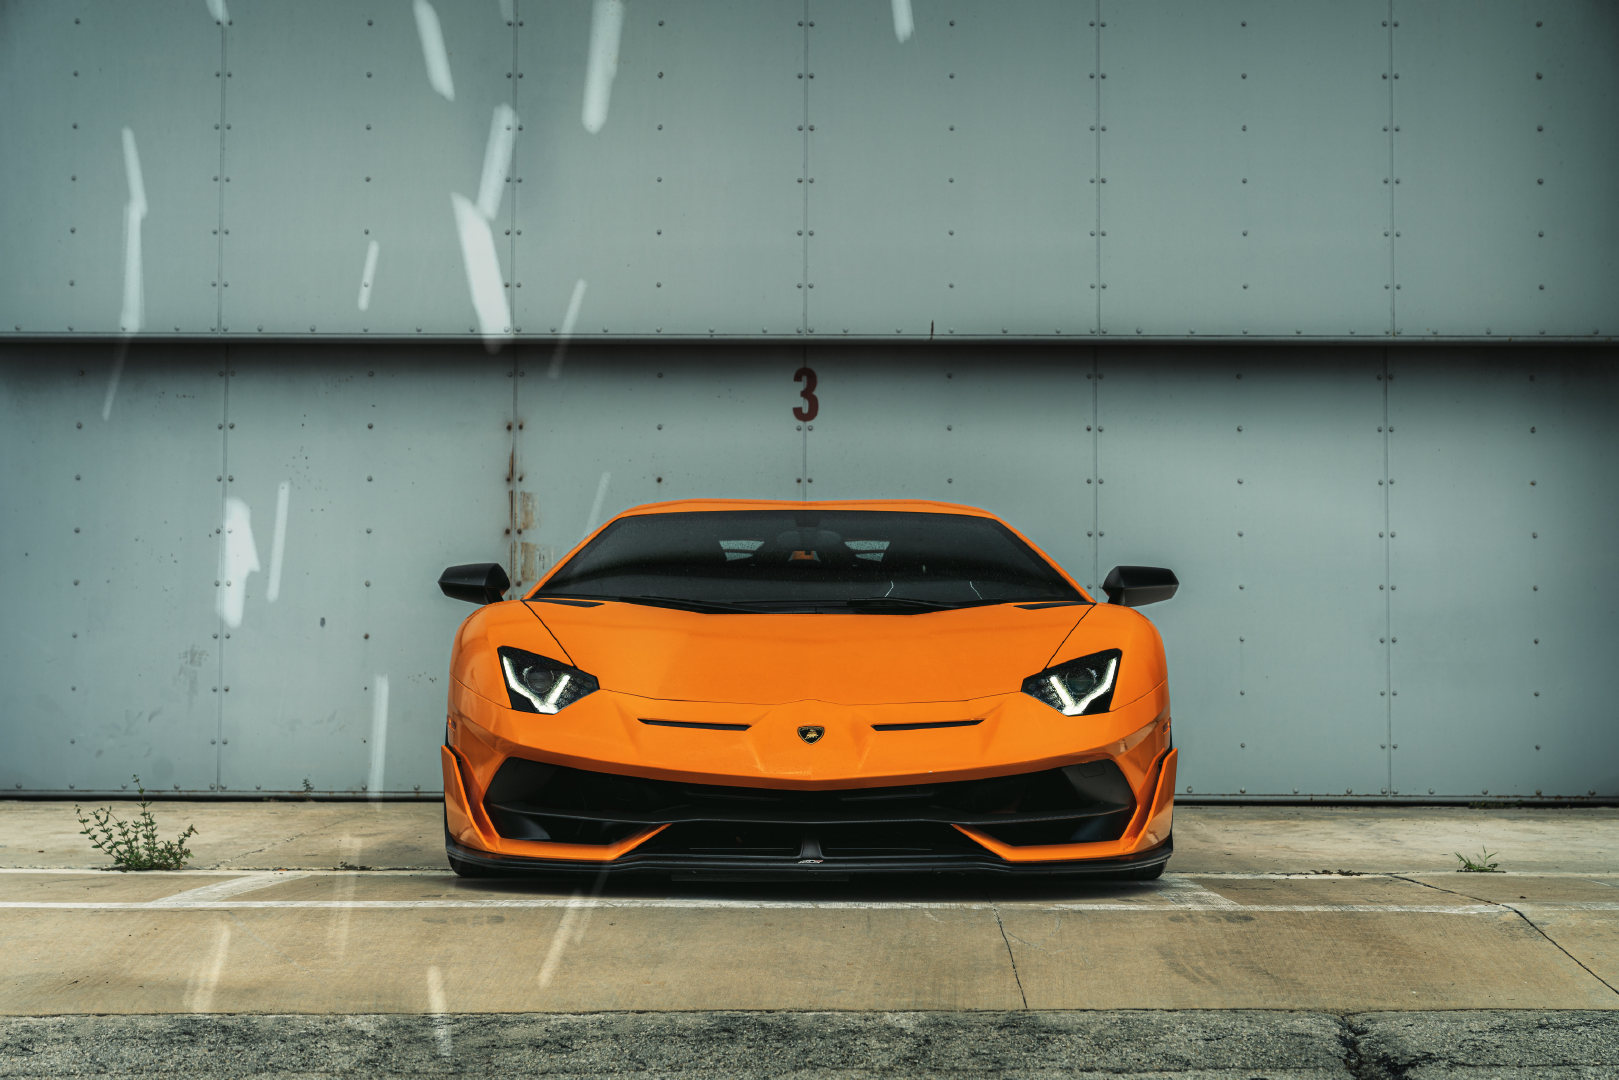 Lamborghini Aventador SVJ，大牛的外观锋芒毕露啊